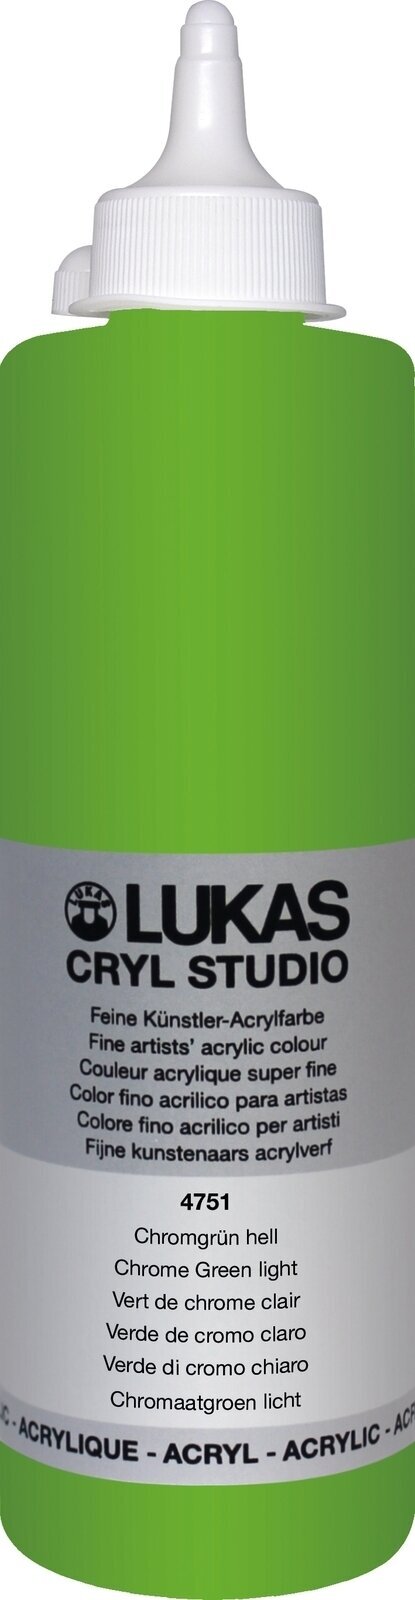 Akryylimaali Lukas Cryl Studio Akryylimaali 500 ml Chrome Green Light